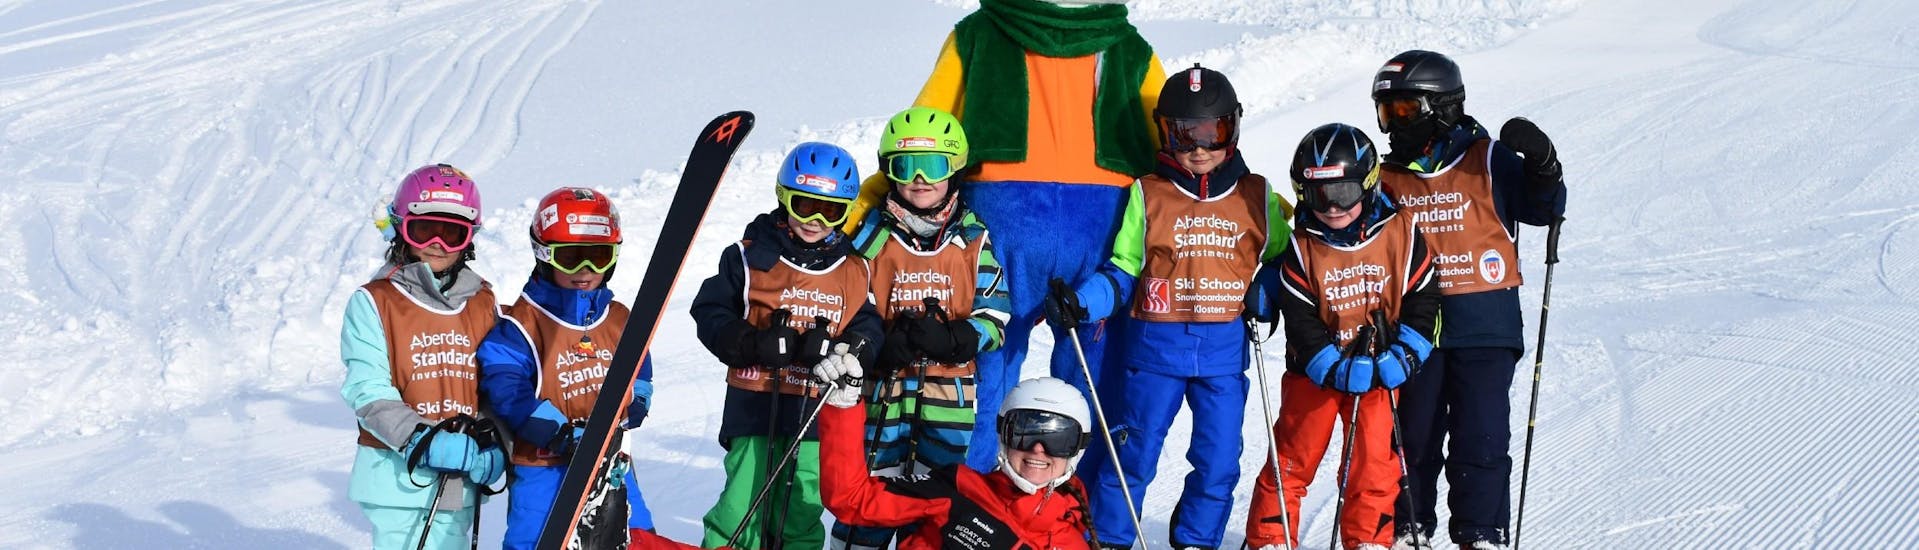 Lezioni di sci per bambini (dai 3 anni) per principianti.